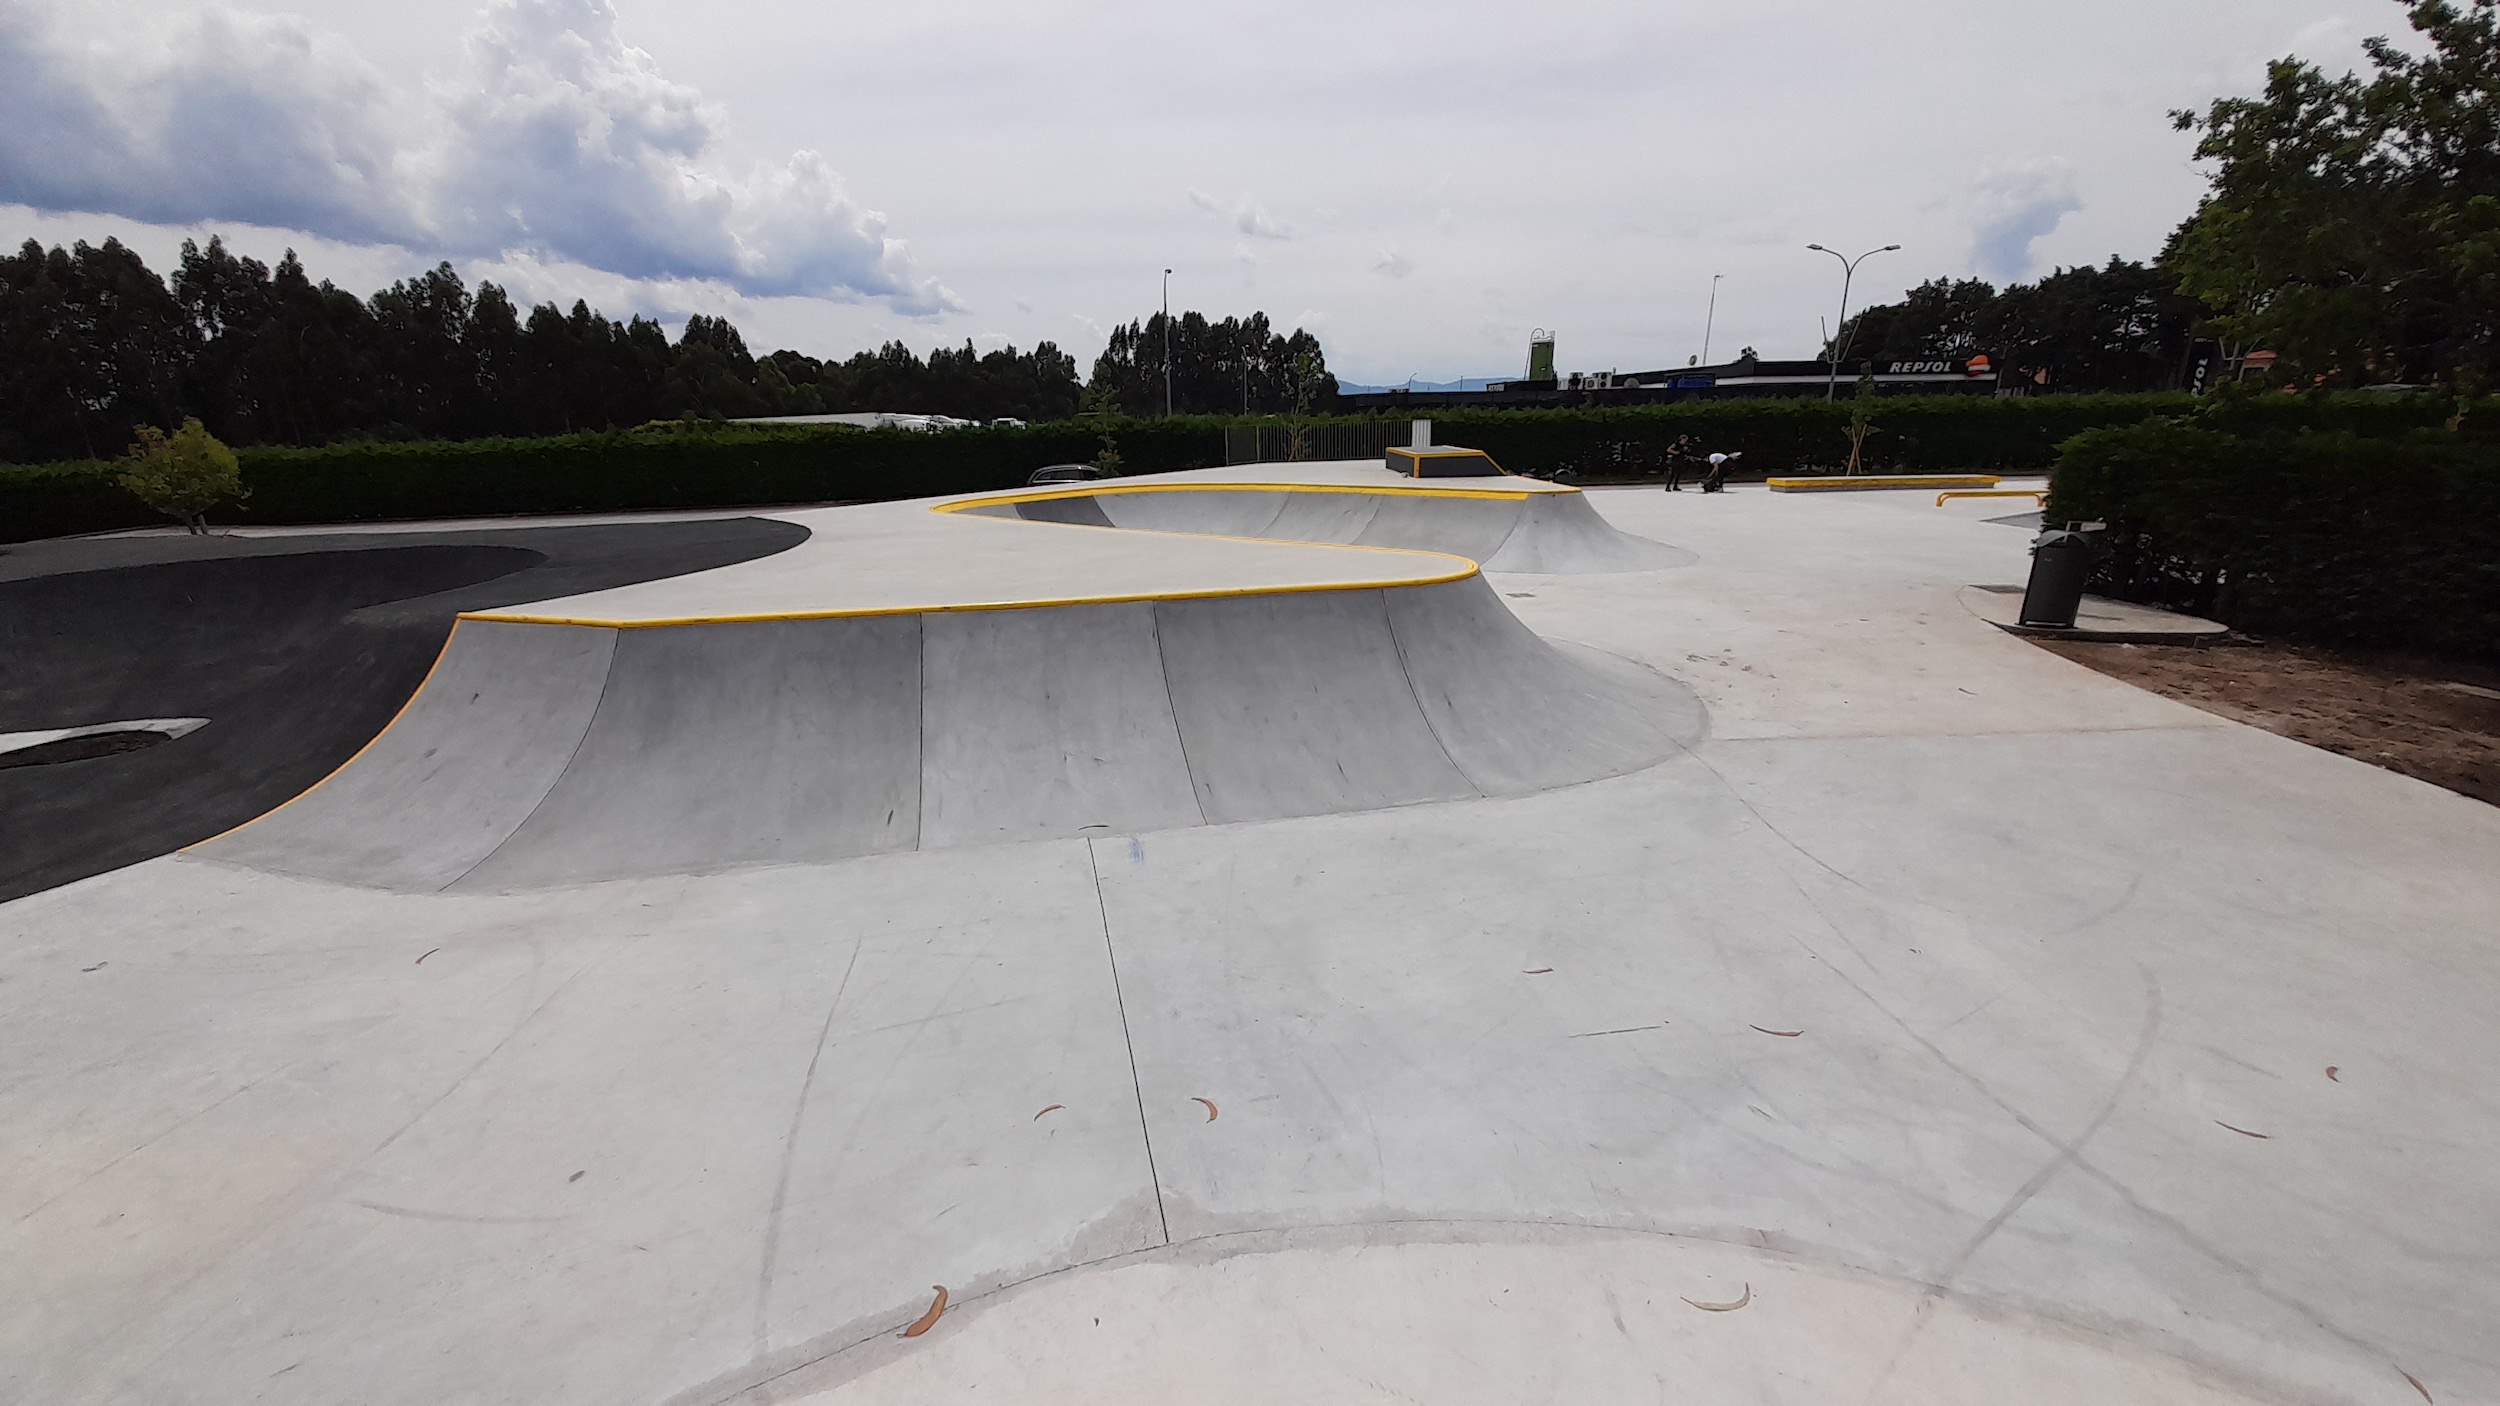 A Cañiza skatepark